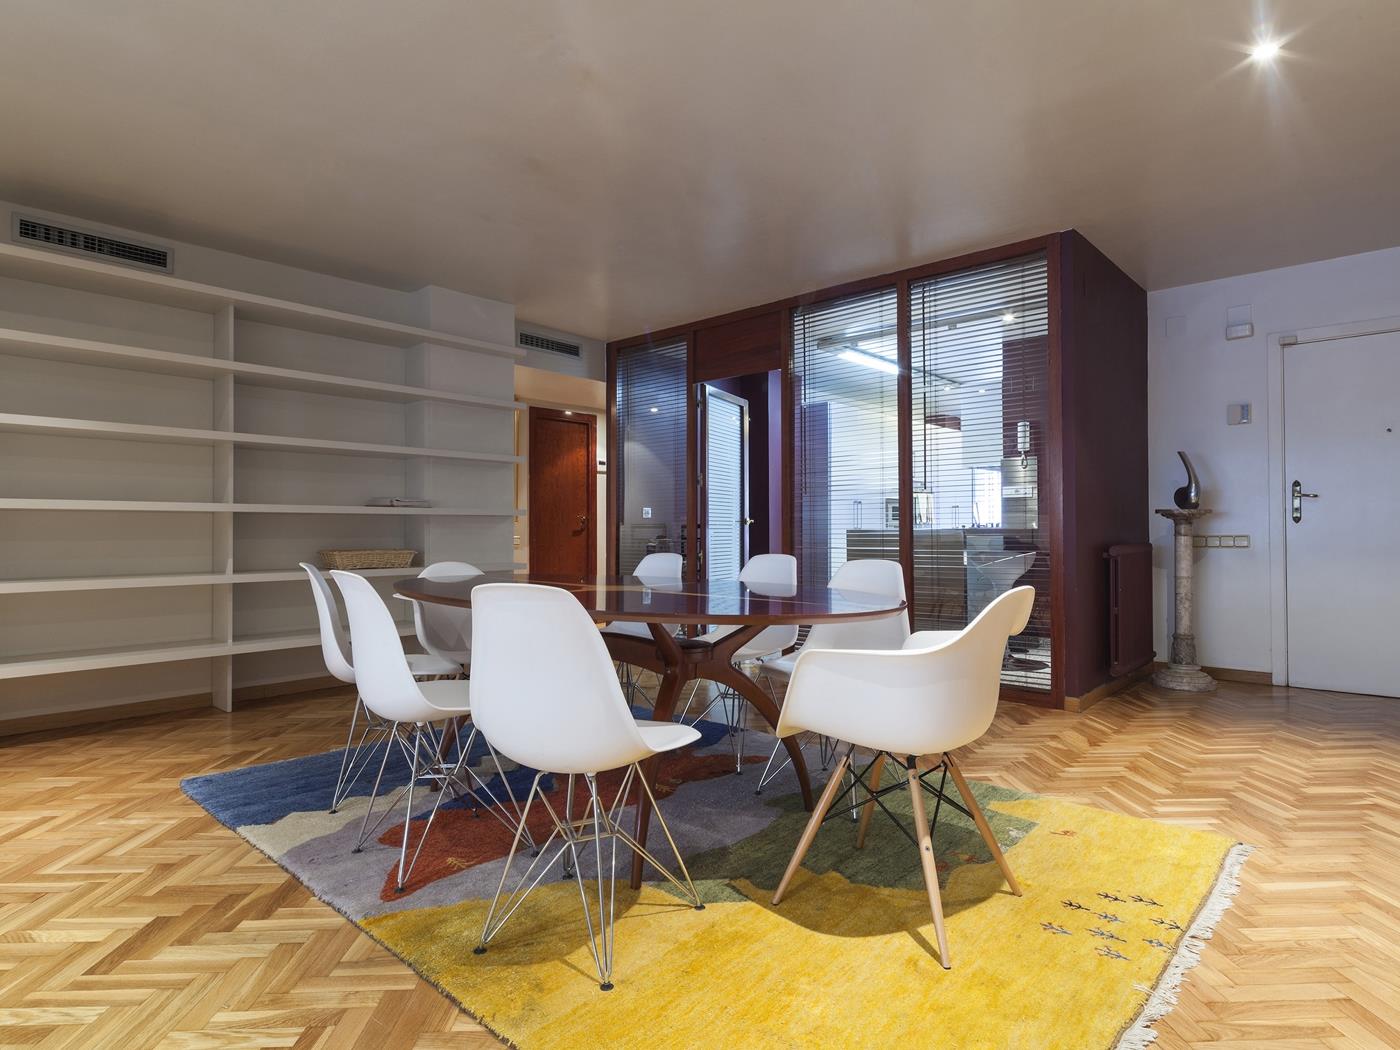 شقة بونانوفا التنفيذية الكلاسيكية ل 8 أشخاص - My Space Barcelona شقة